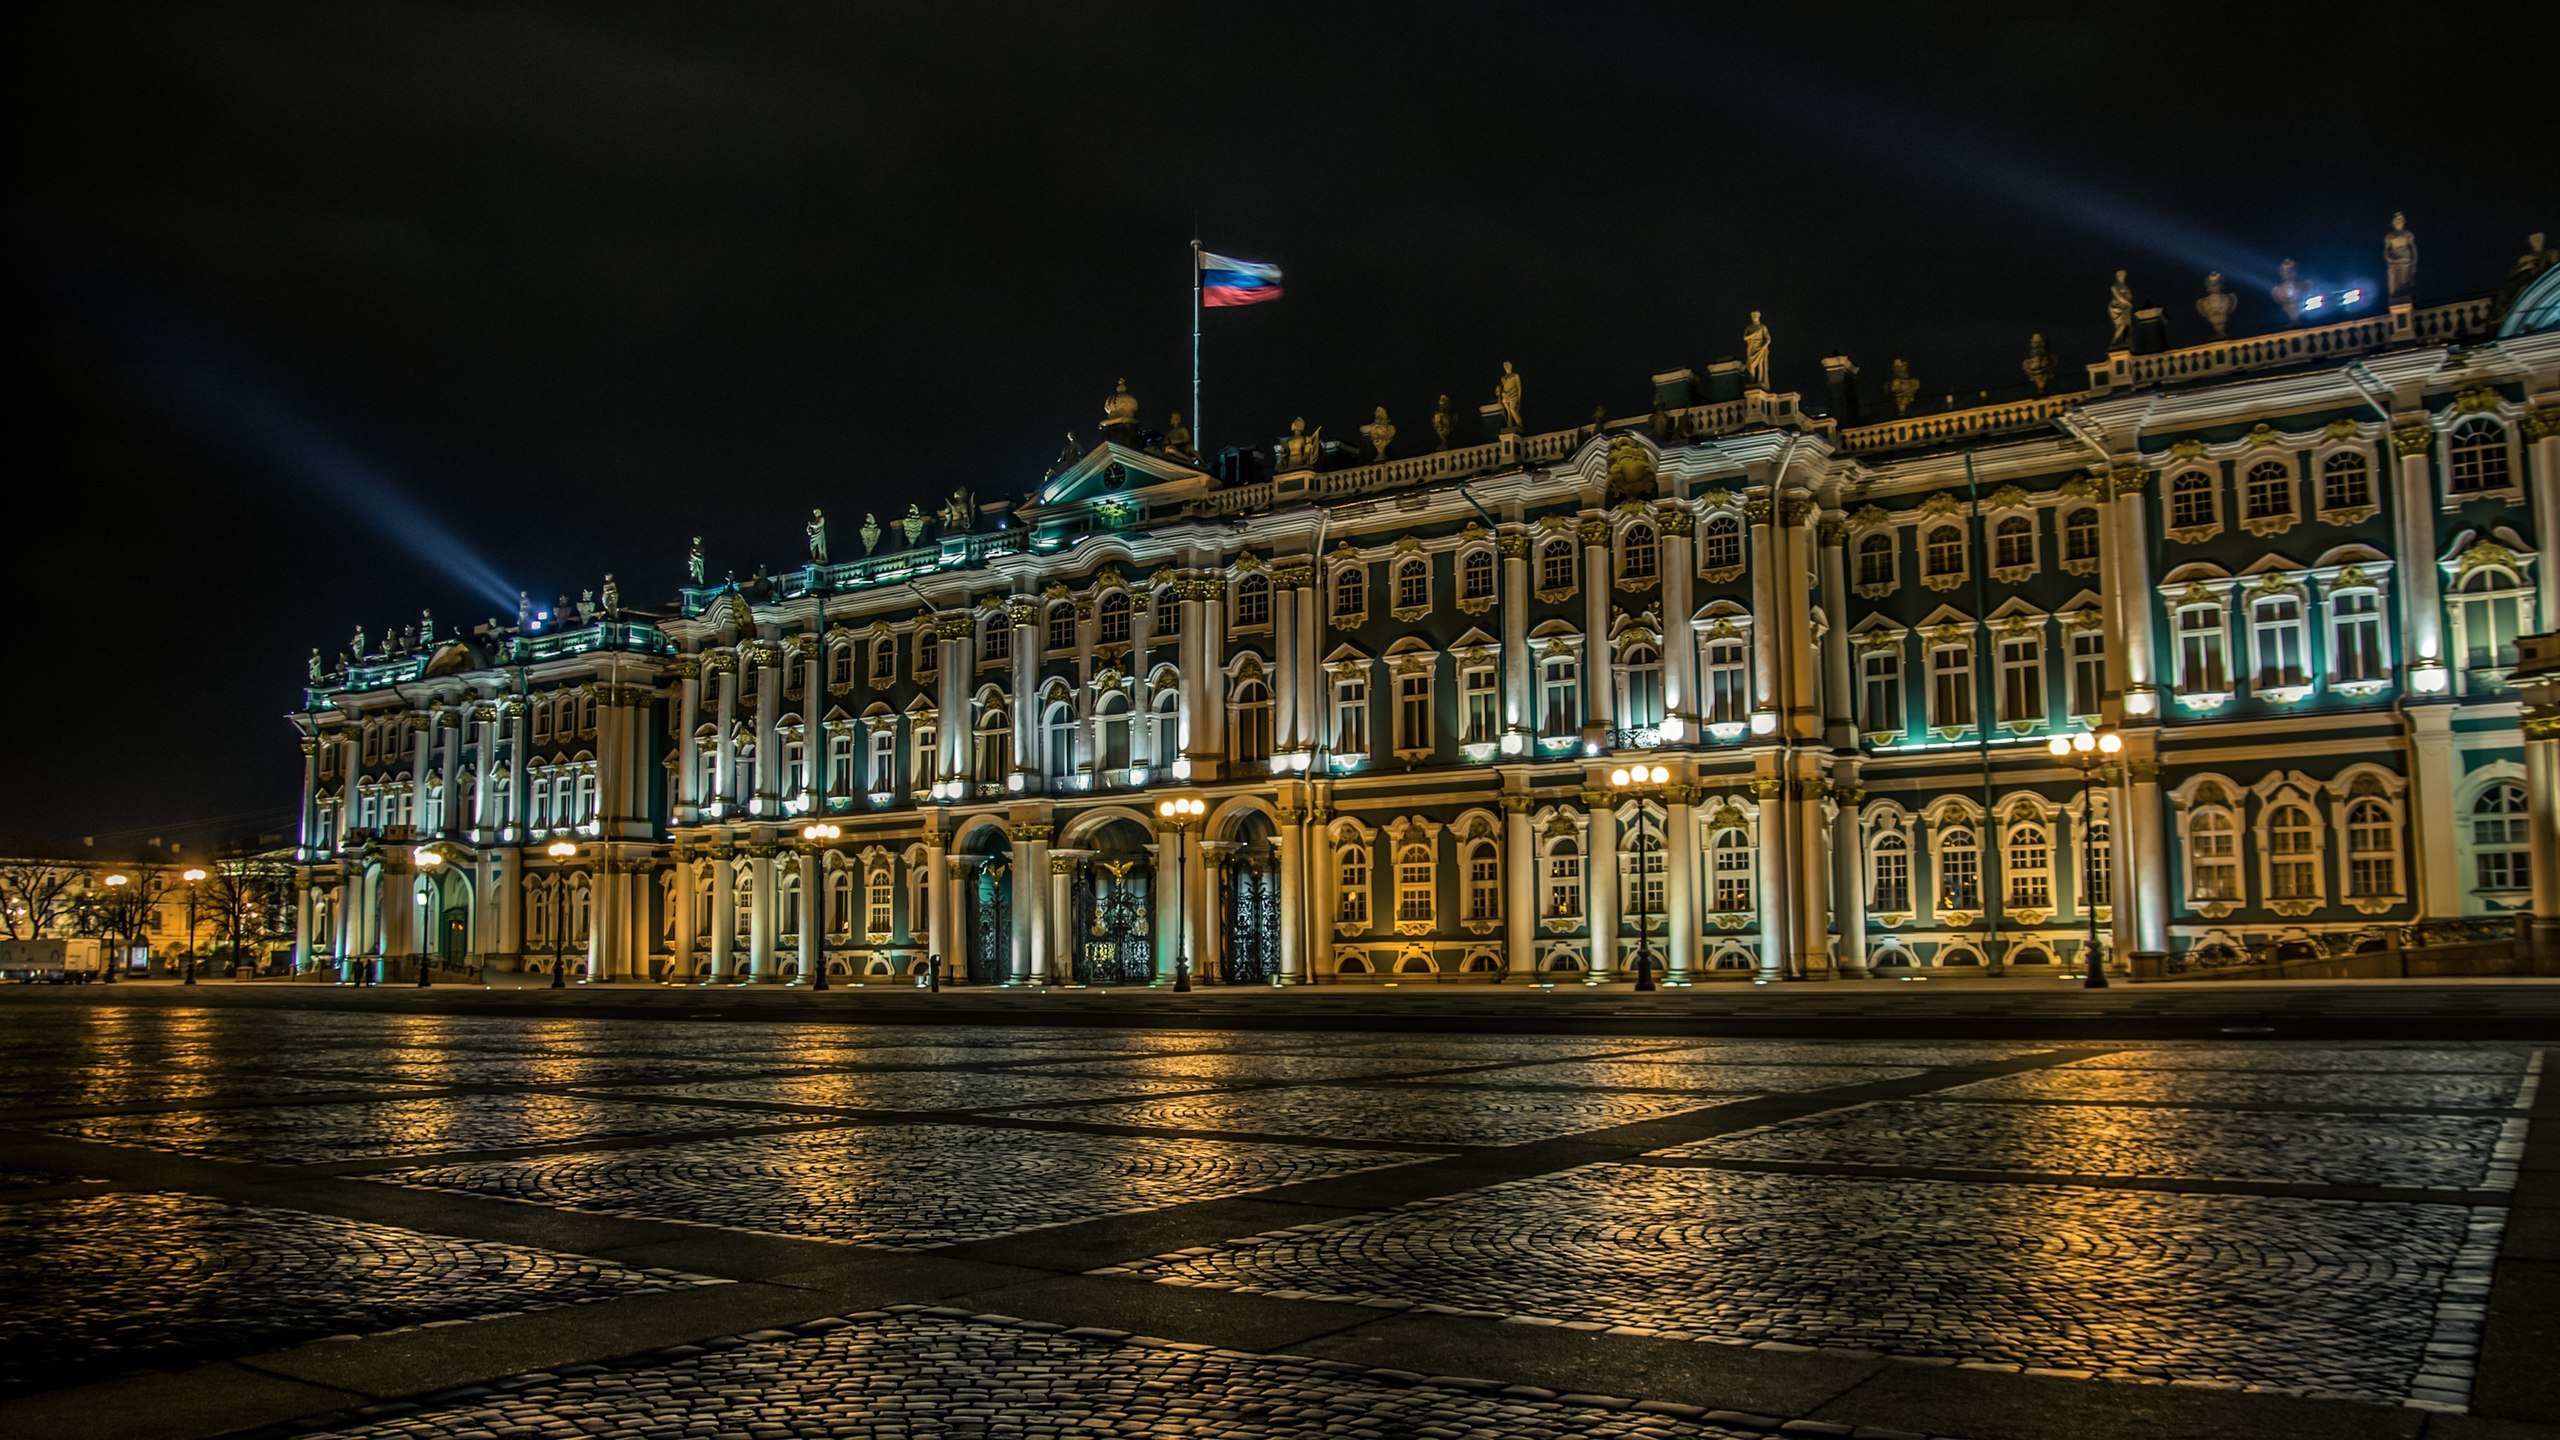 дворцовая площадь в санкт петербурге ночью